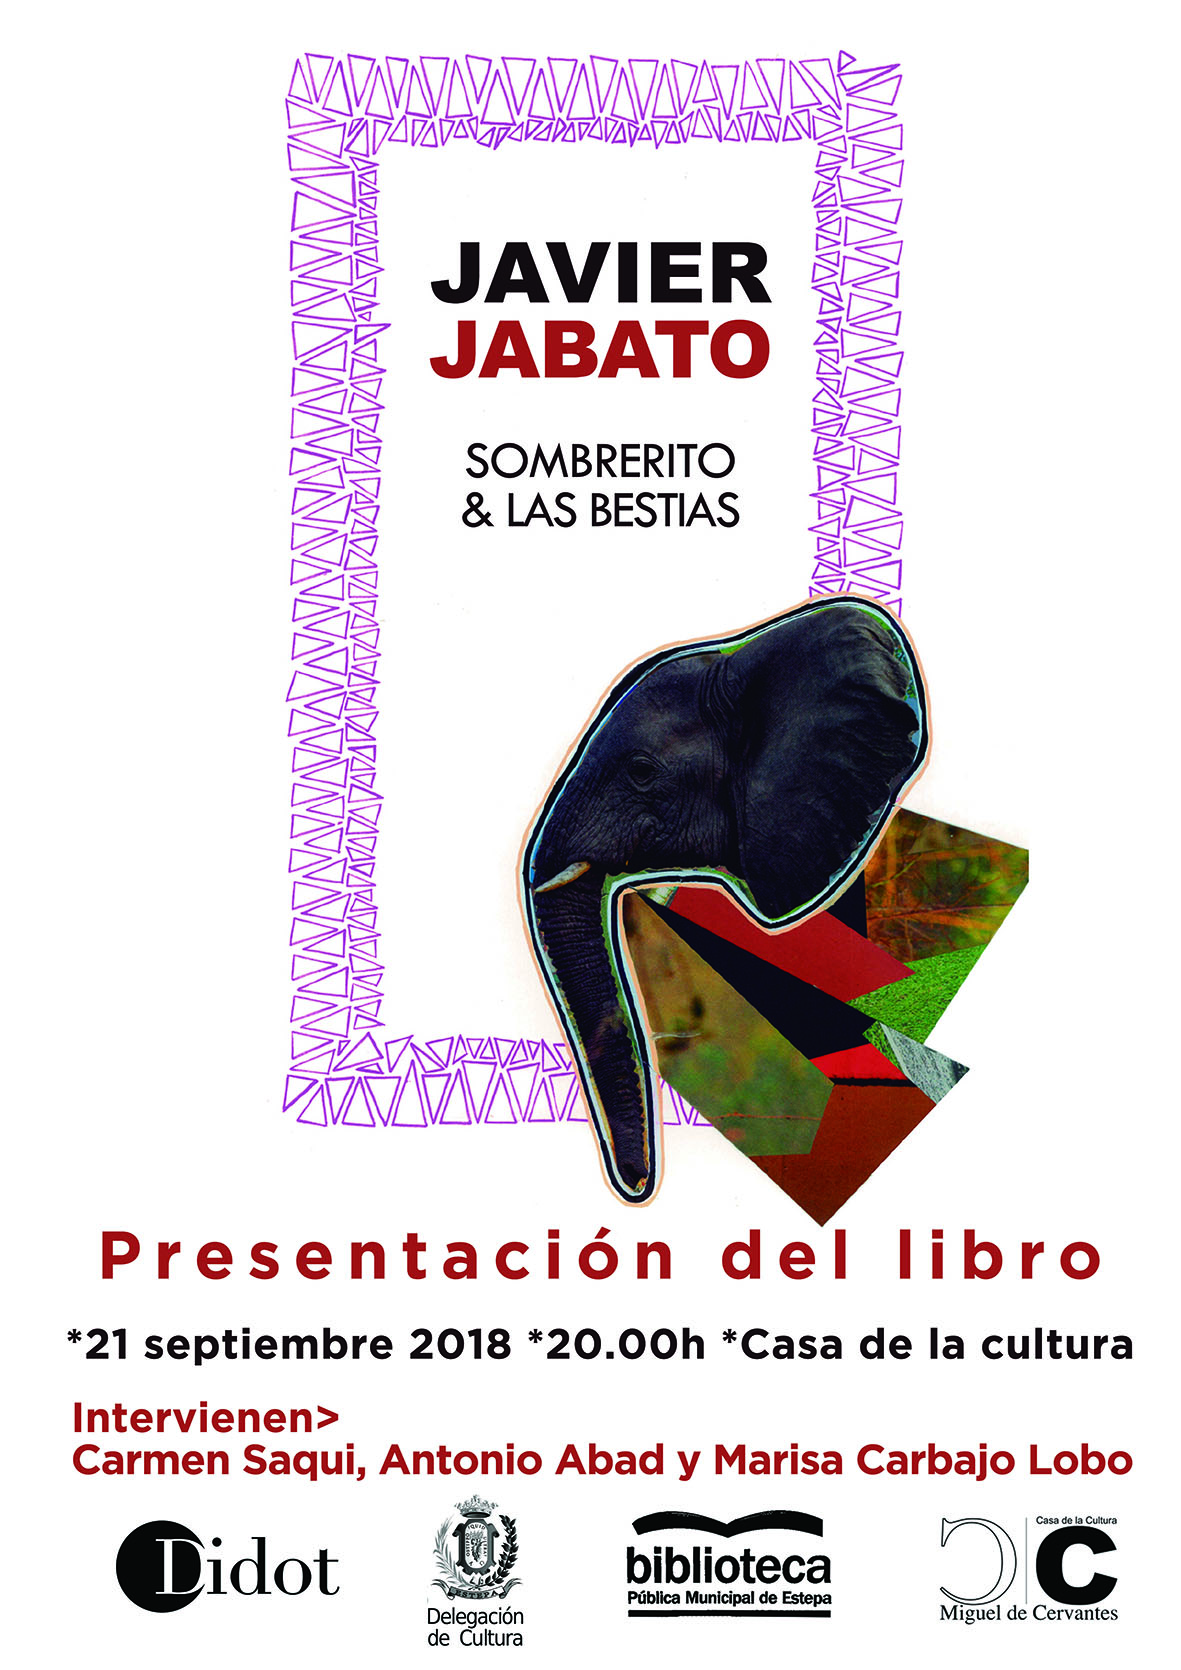 Presentación del libro póstumo de Javier Jabato en Estepa